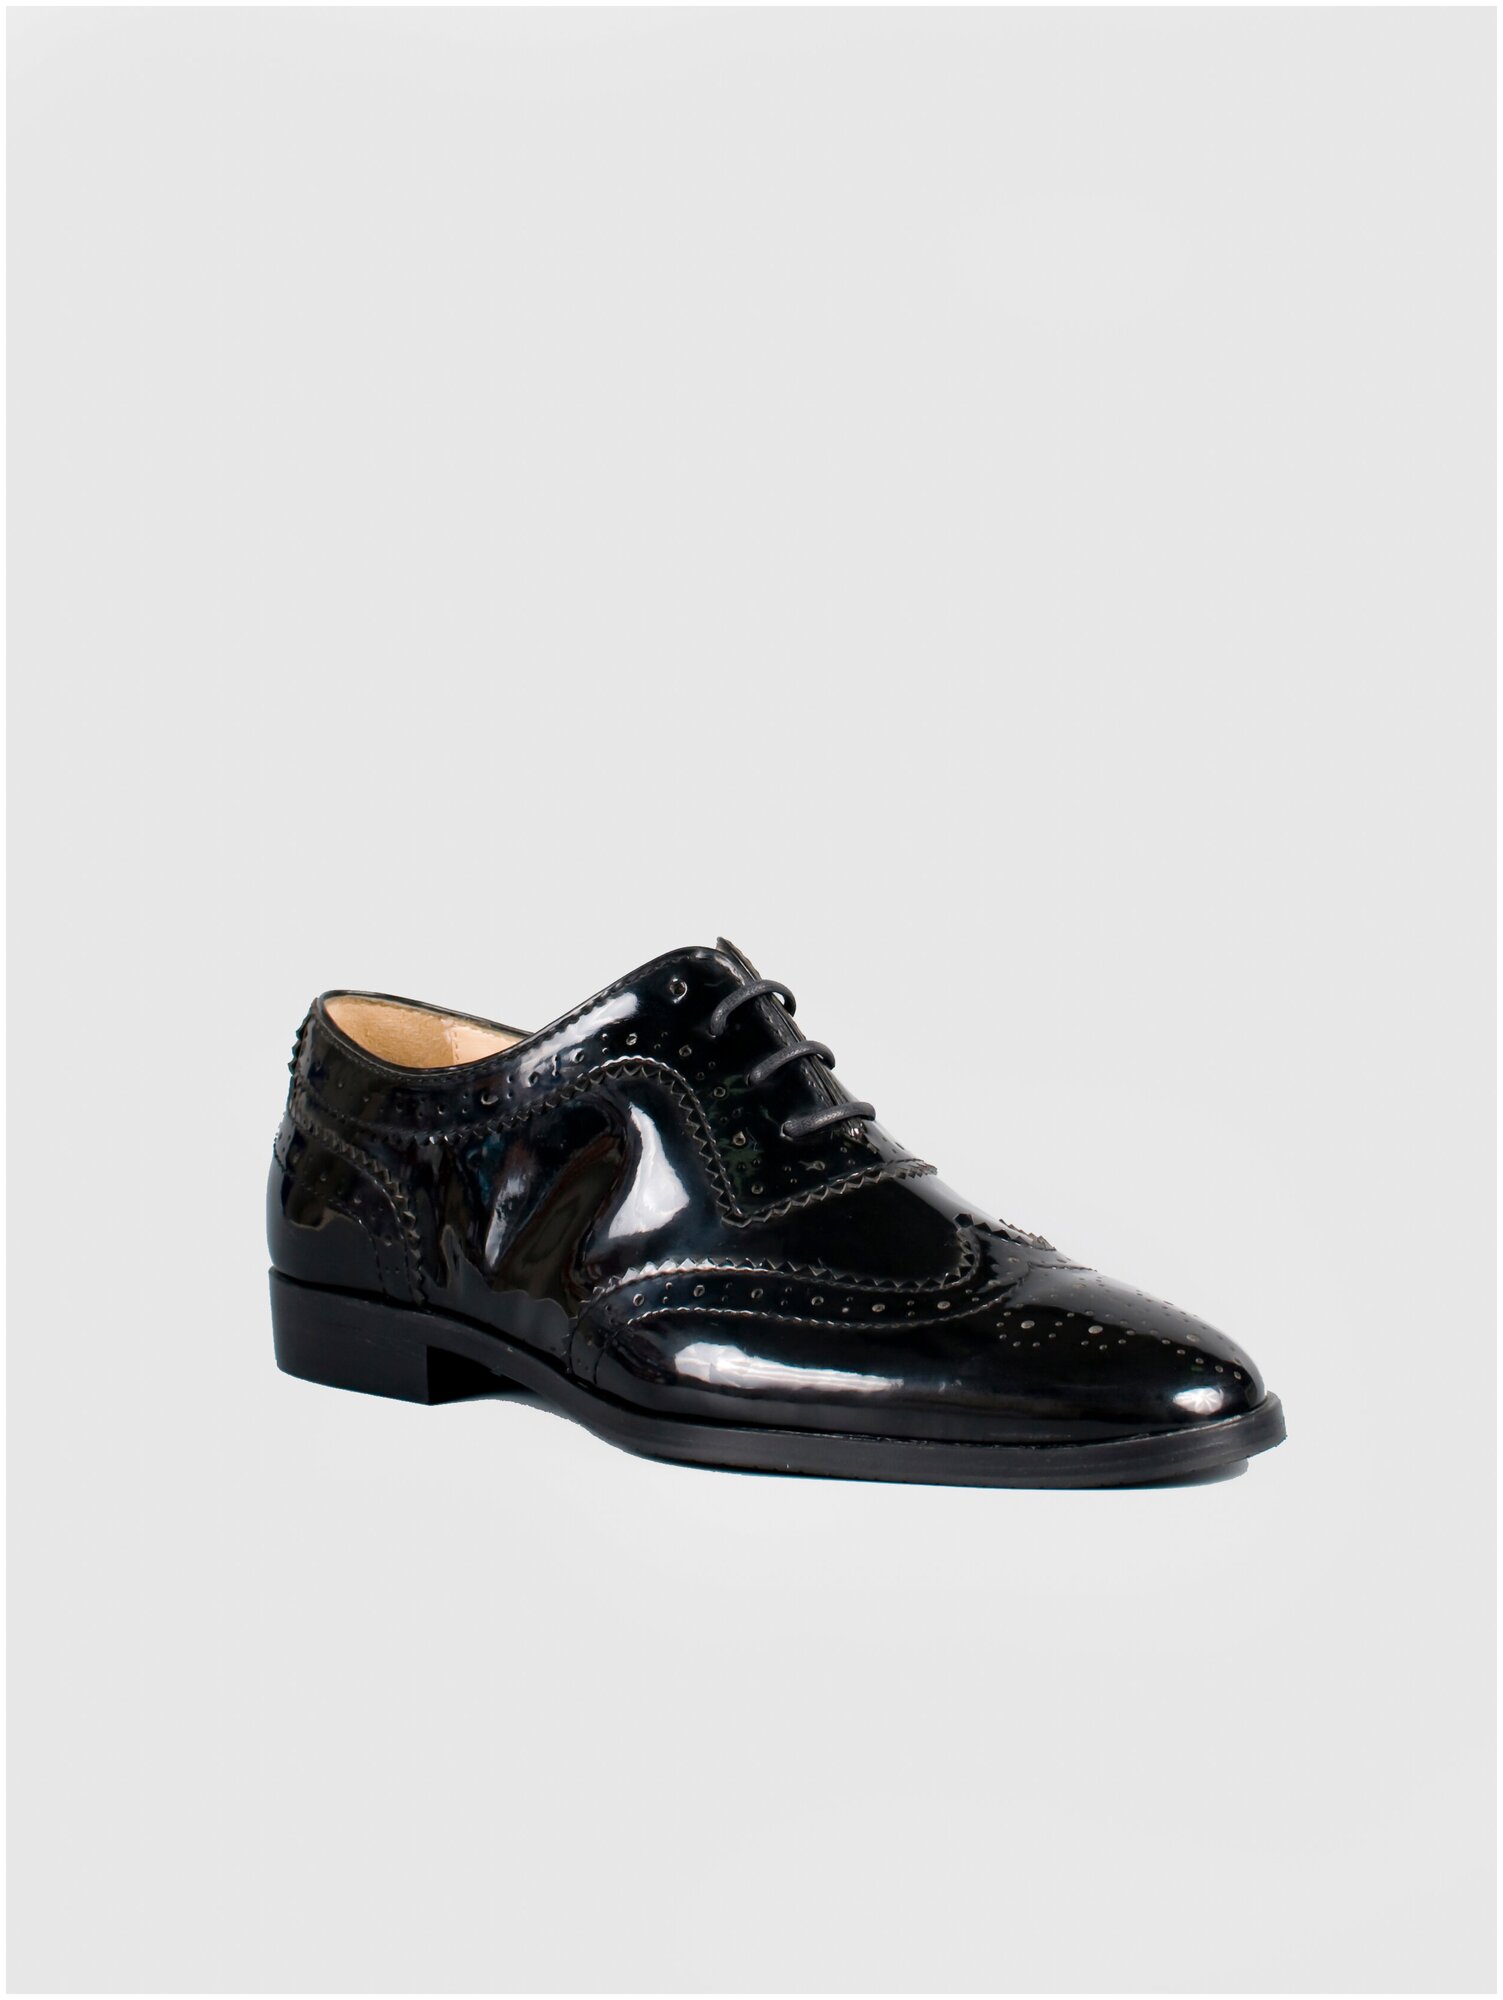 Женская обувь G. Benatti модель Броги лак цвет черный шнурки